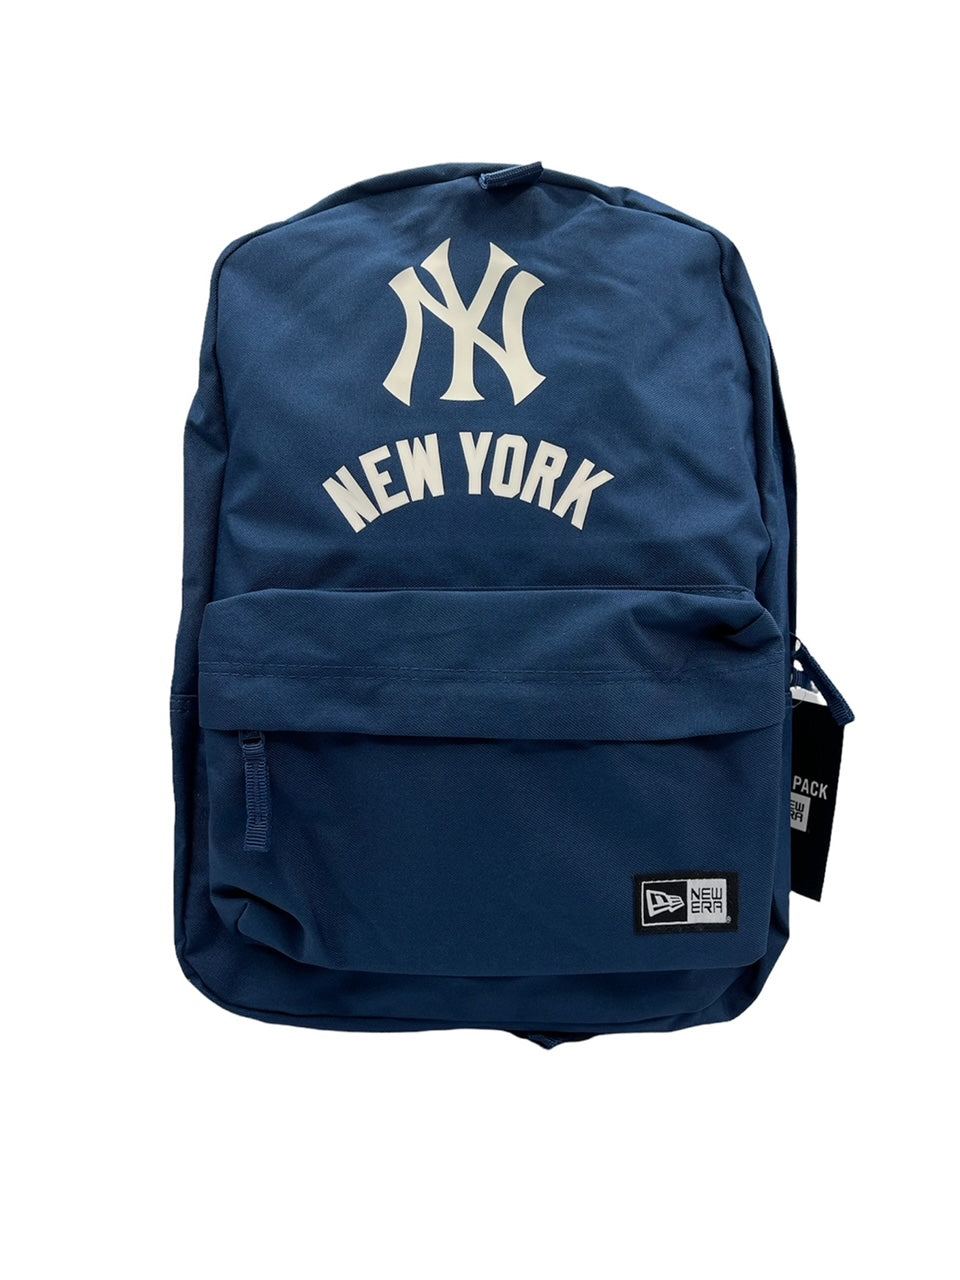 MLB Yankees Zip Pod Backpack